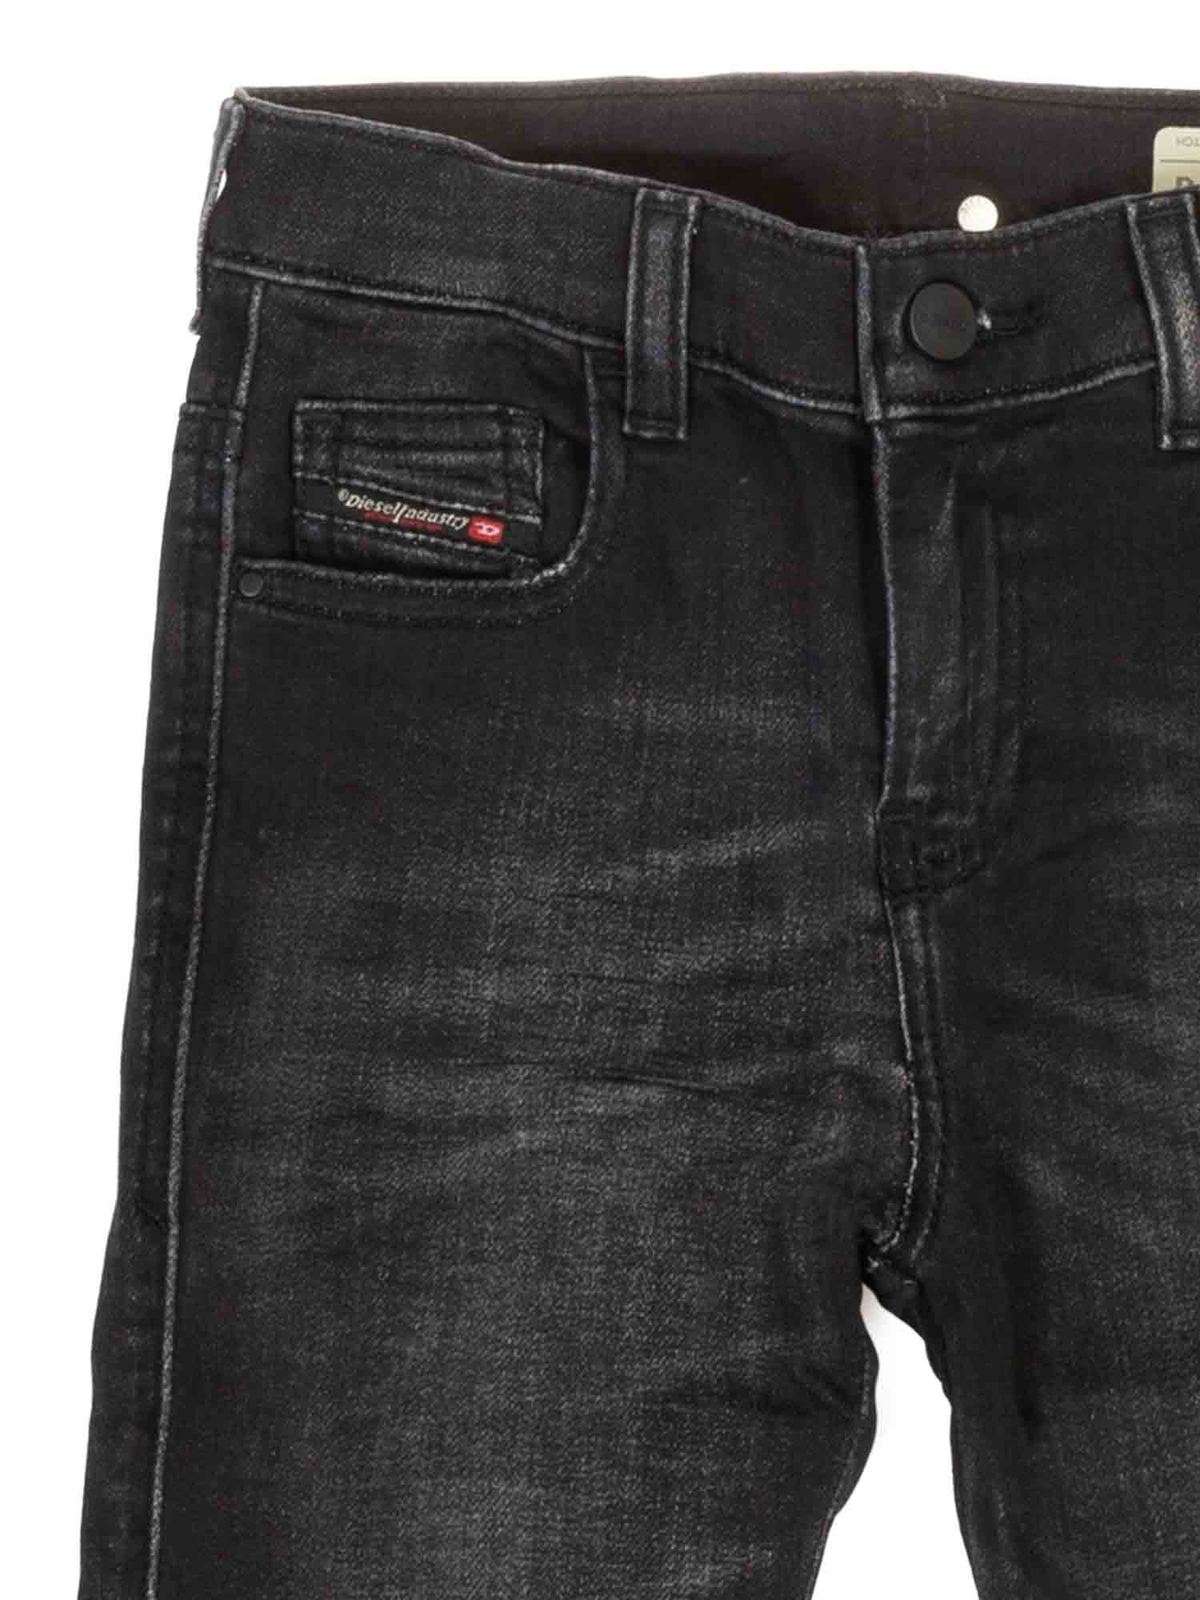 Matematik mulighed cache Jeans Diesel - Branded delavé jeans in black - 00J4ZSKXB50K02 | iKRIX.com